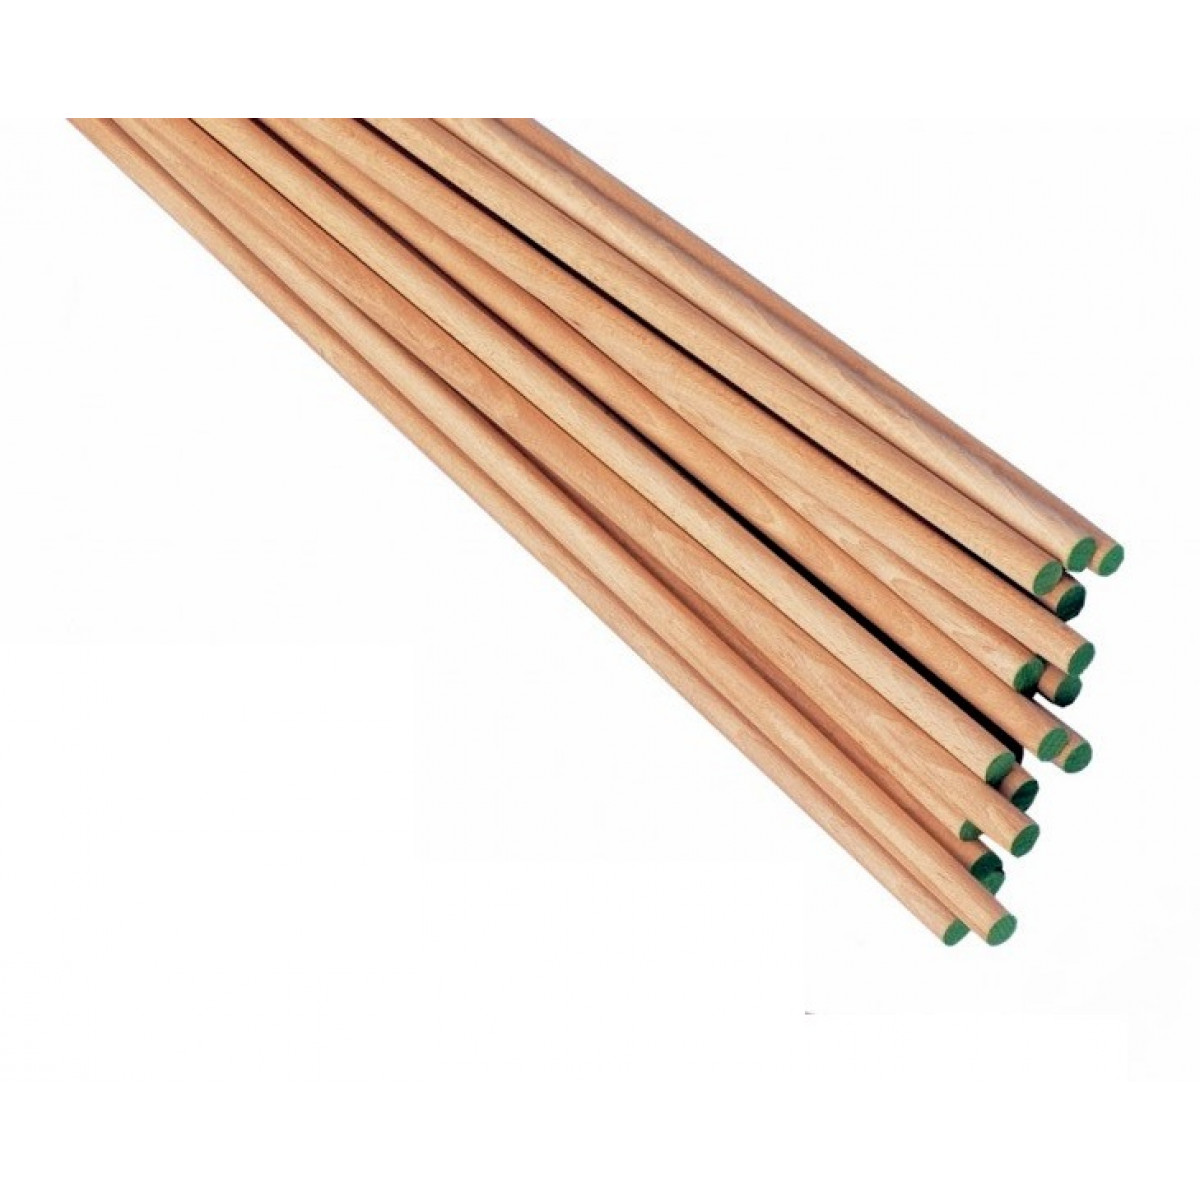 A wooden stick. Палка гимнастическая деревянная 1м20см. Палка гимнастическая 70 см. RNTOYS палка гимнастическая. Гимнастические палки деревянные залаченные 110 см.